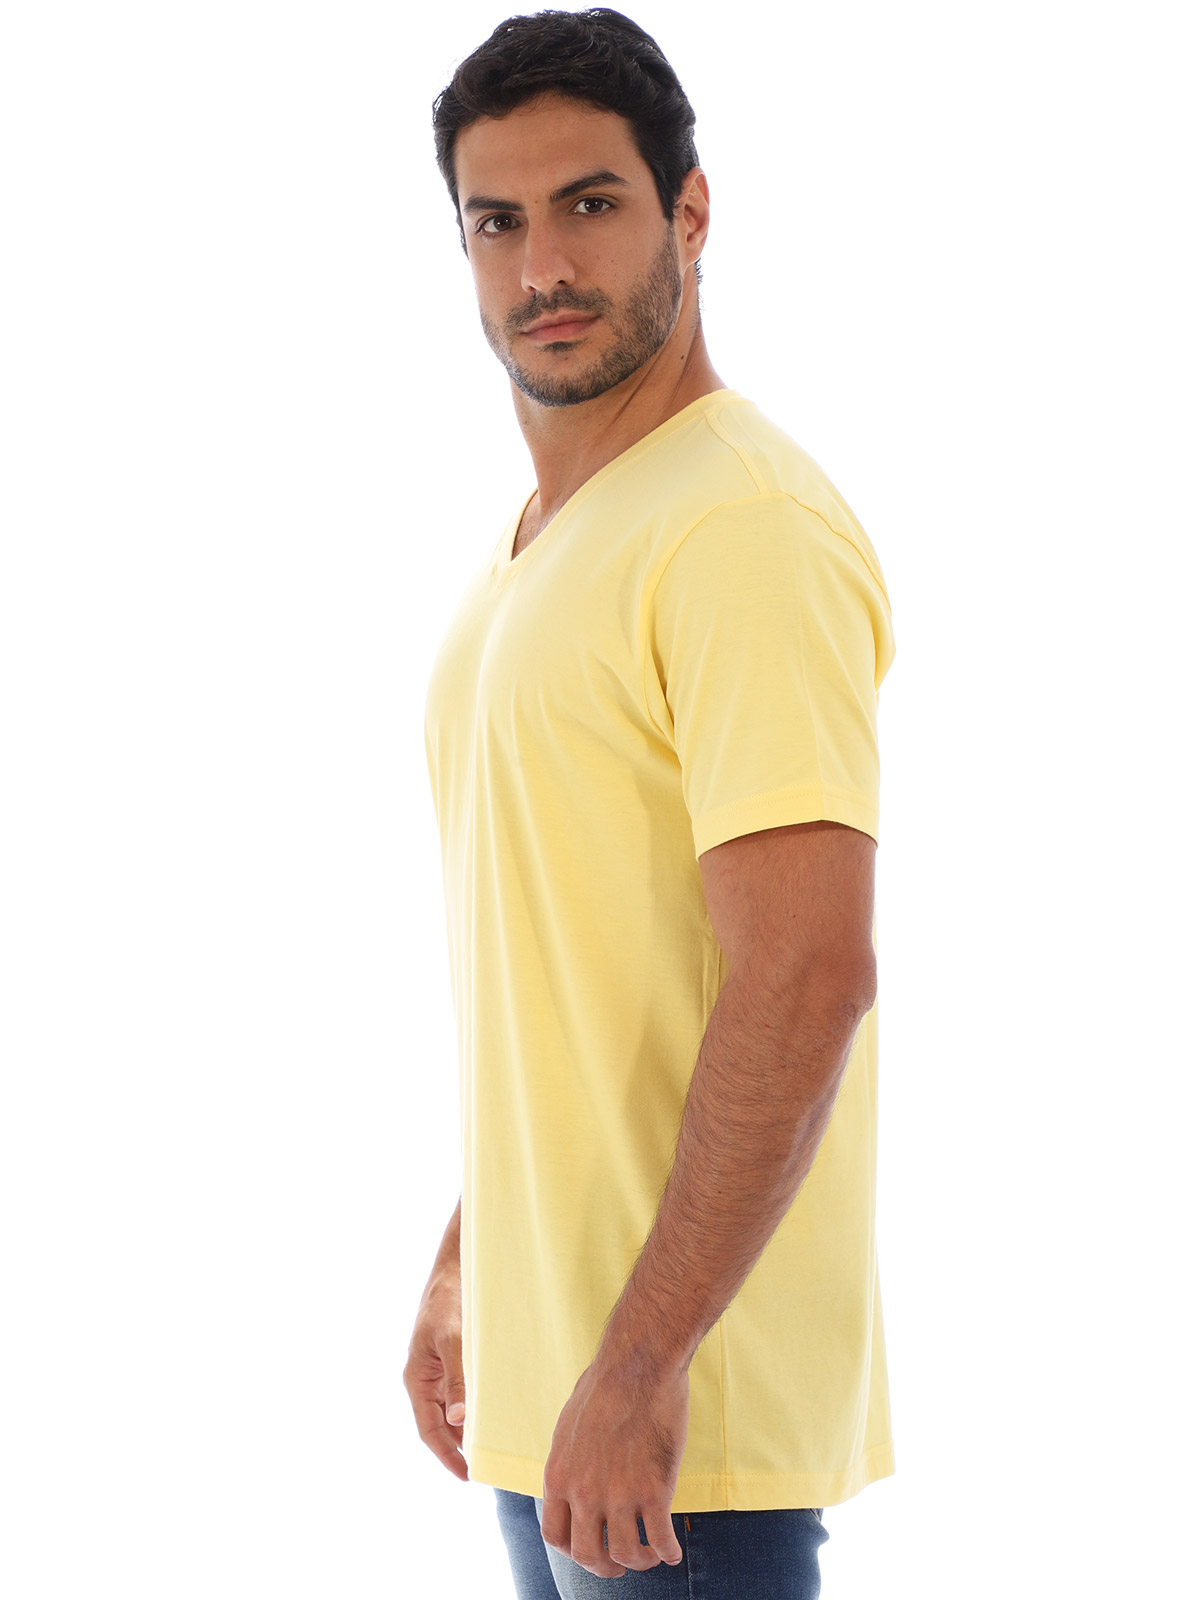 Camiseta Masculina Algodão Decote V. Lisa Amarela